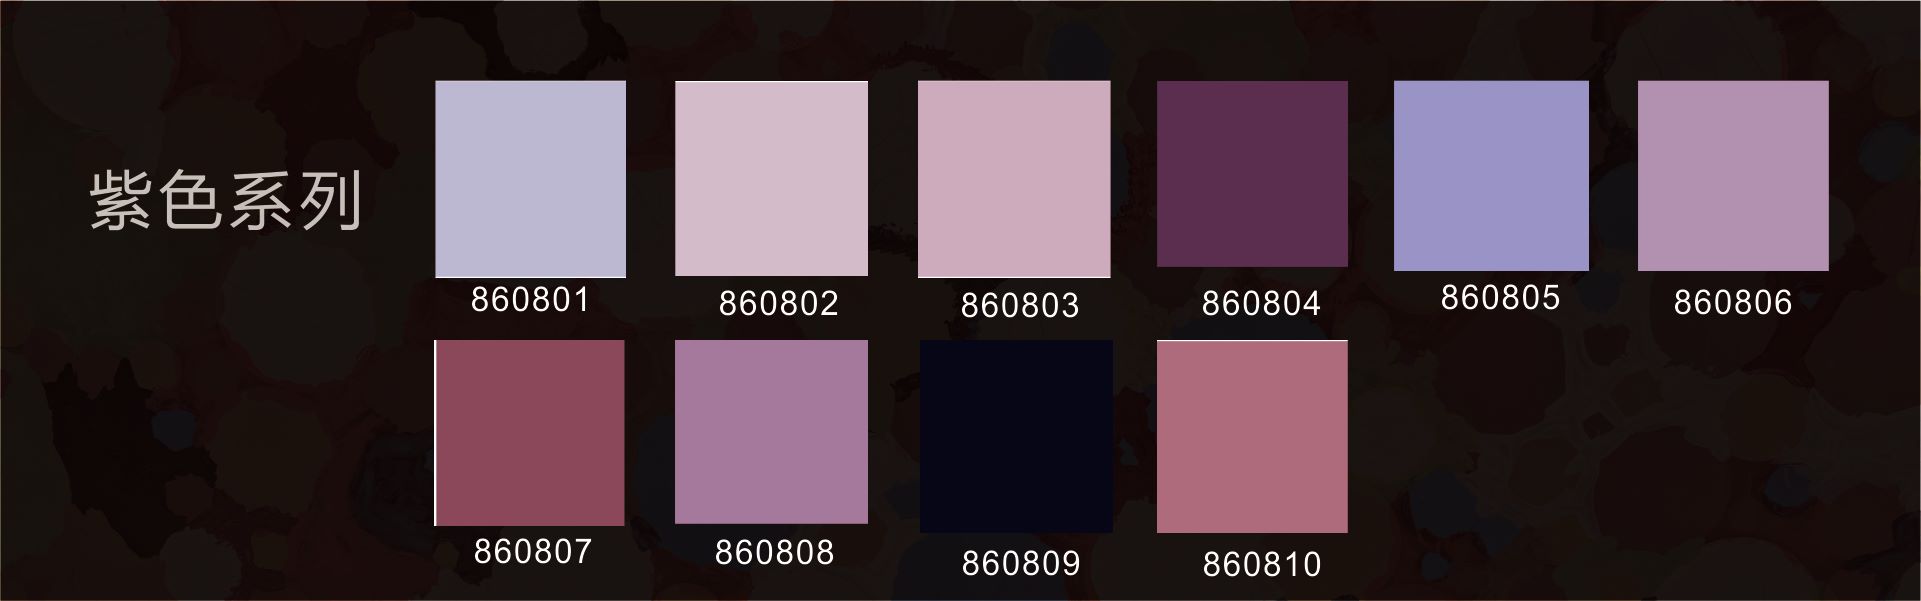 紫色系列